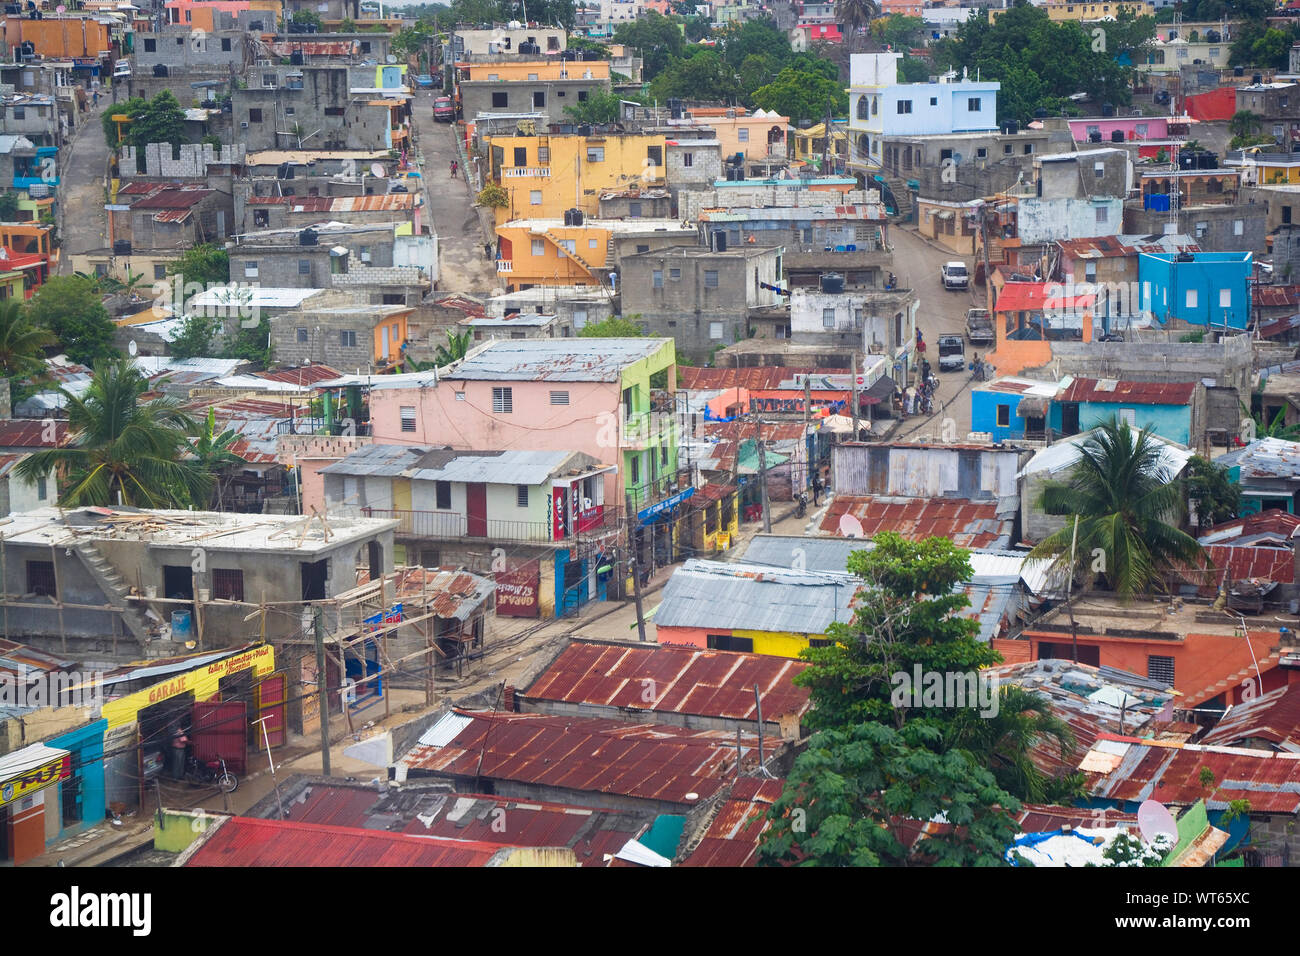 SANTO DOMINGO, República Dominicana - Junio 26, 2019: los barrios pobres en las afueras de la capital Foto de stock